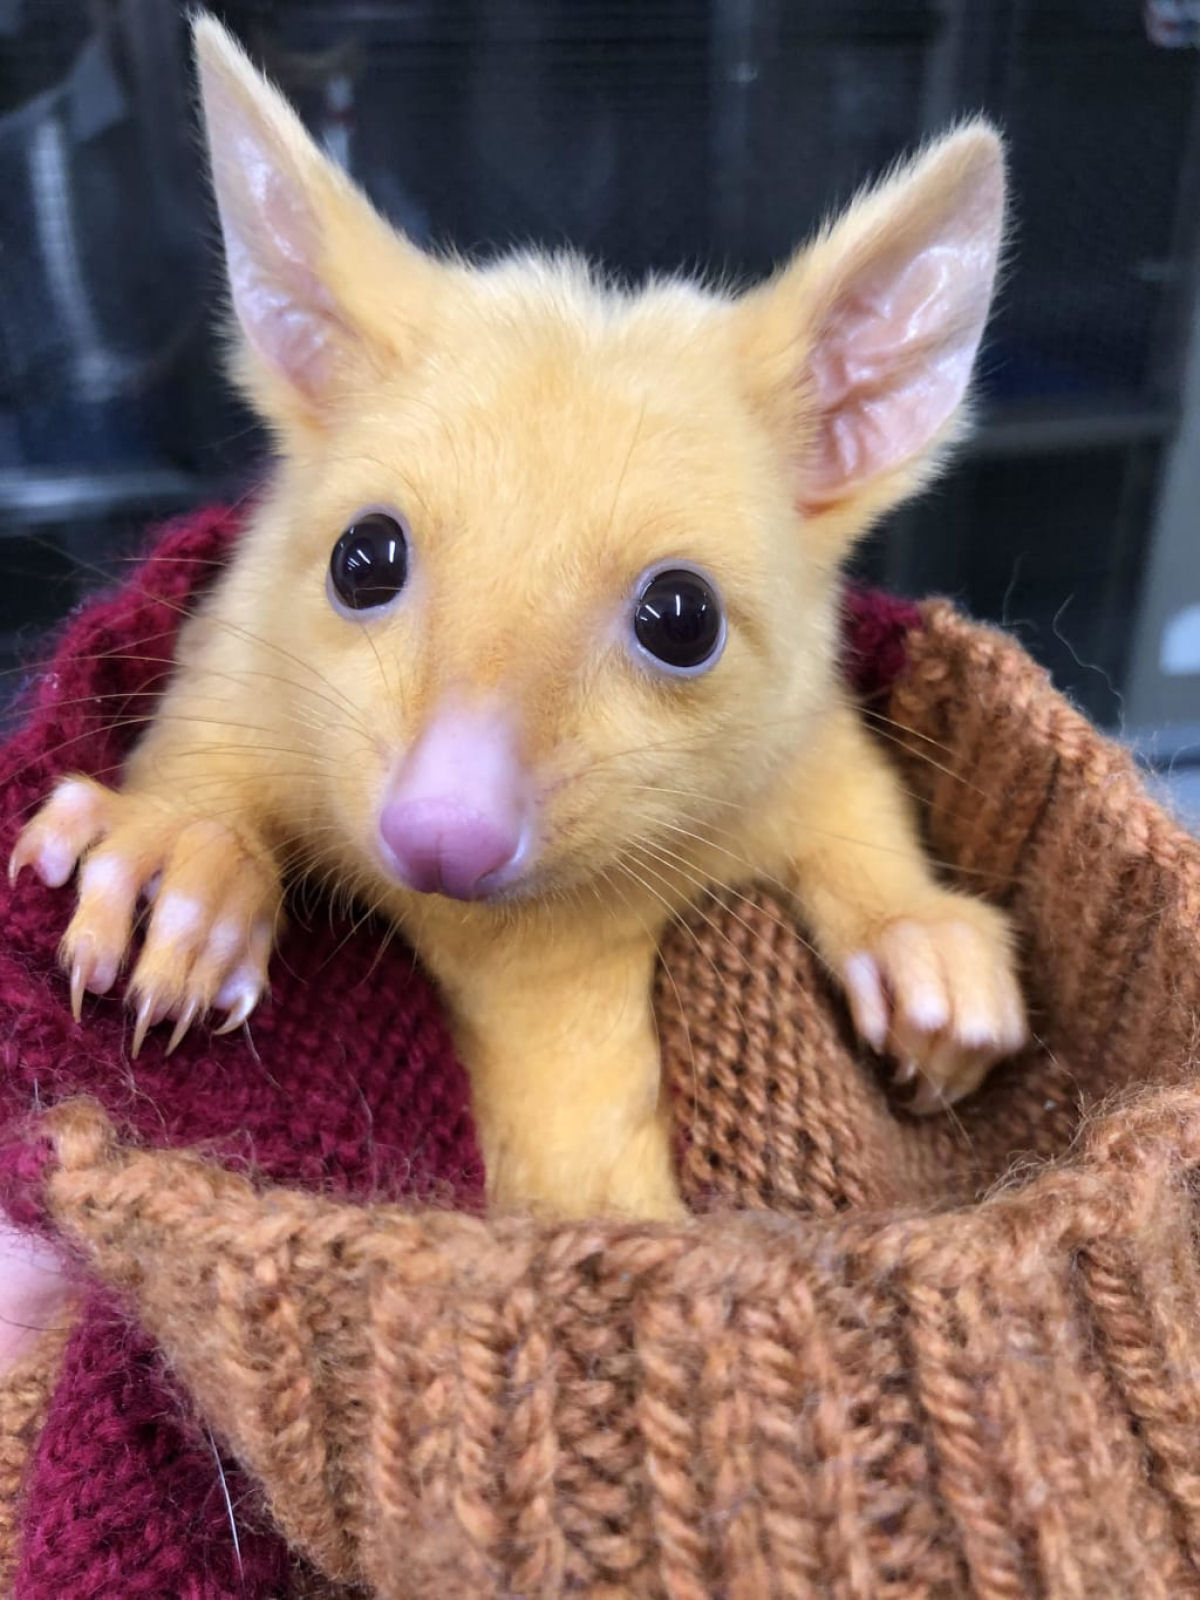 Este cusu-comum australiano tem uma rara mutao gentica que lhe valeu o nome de Pikachu